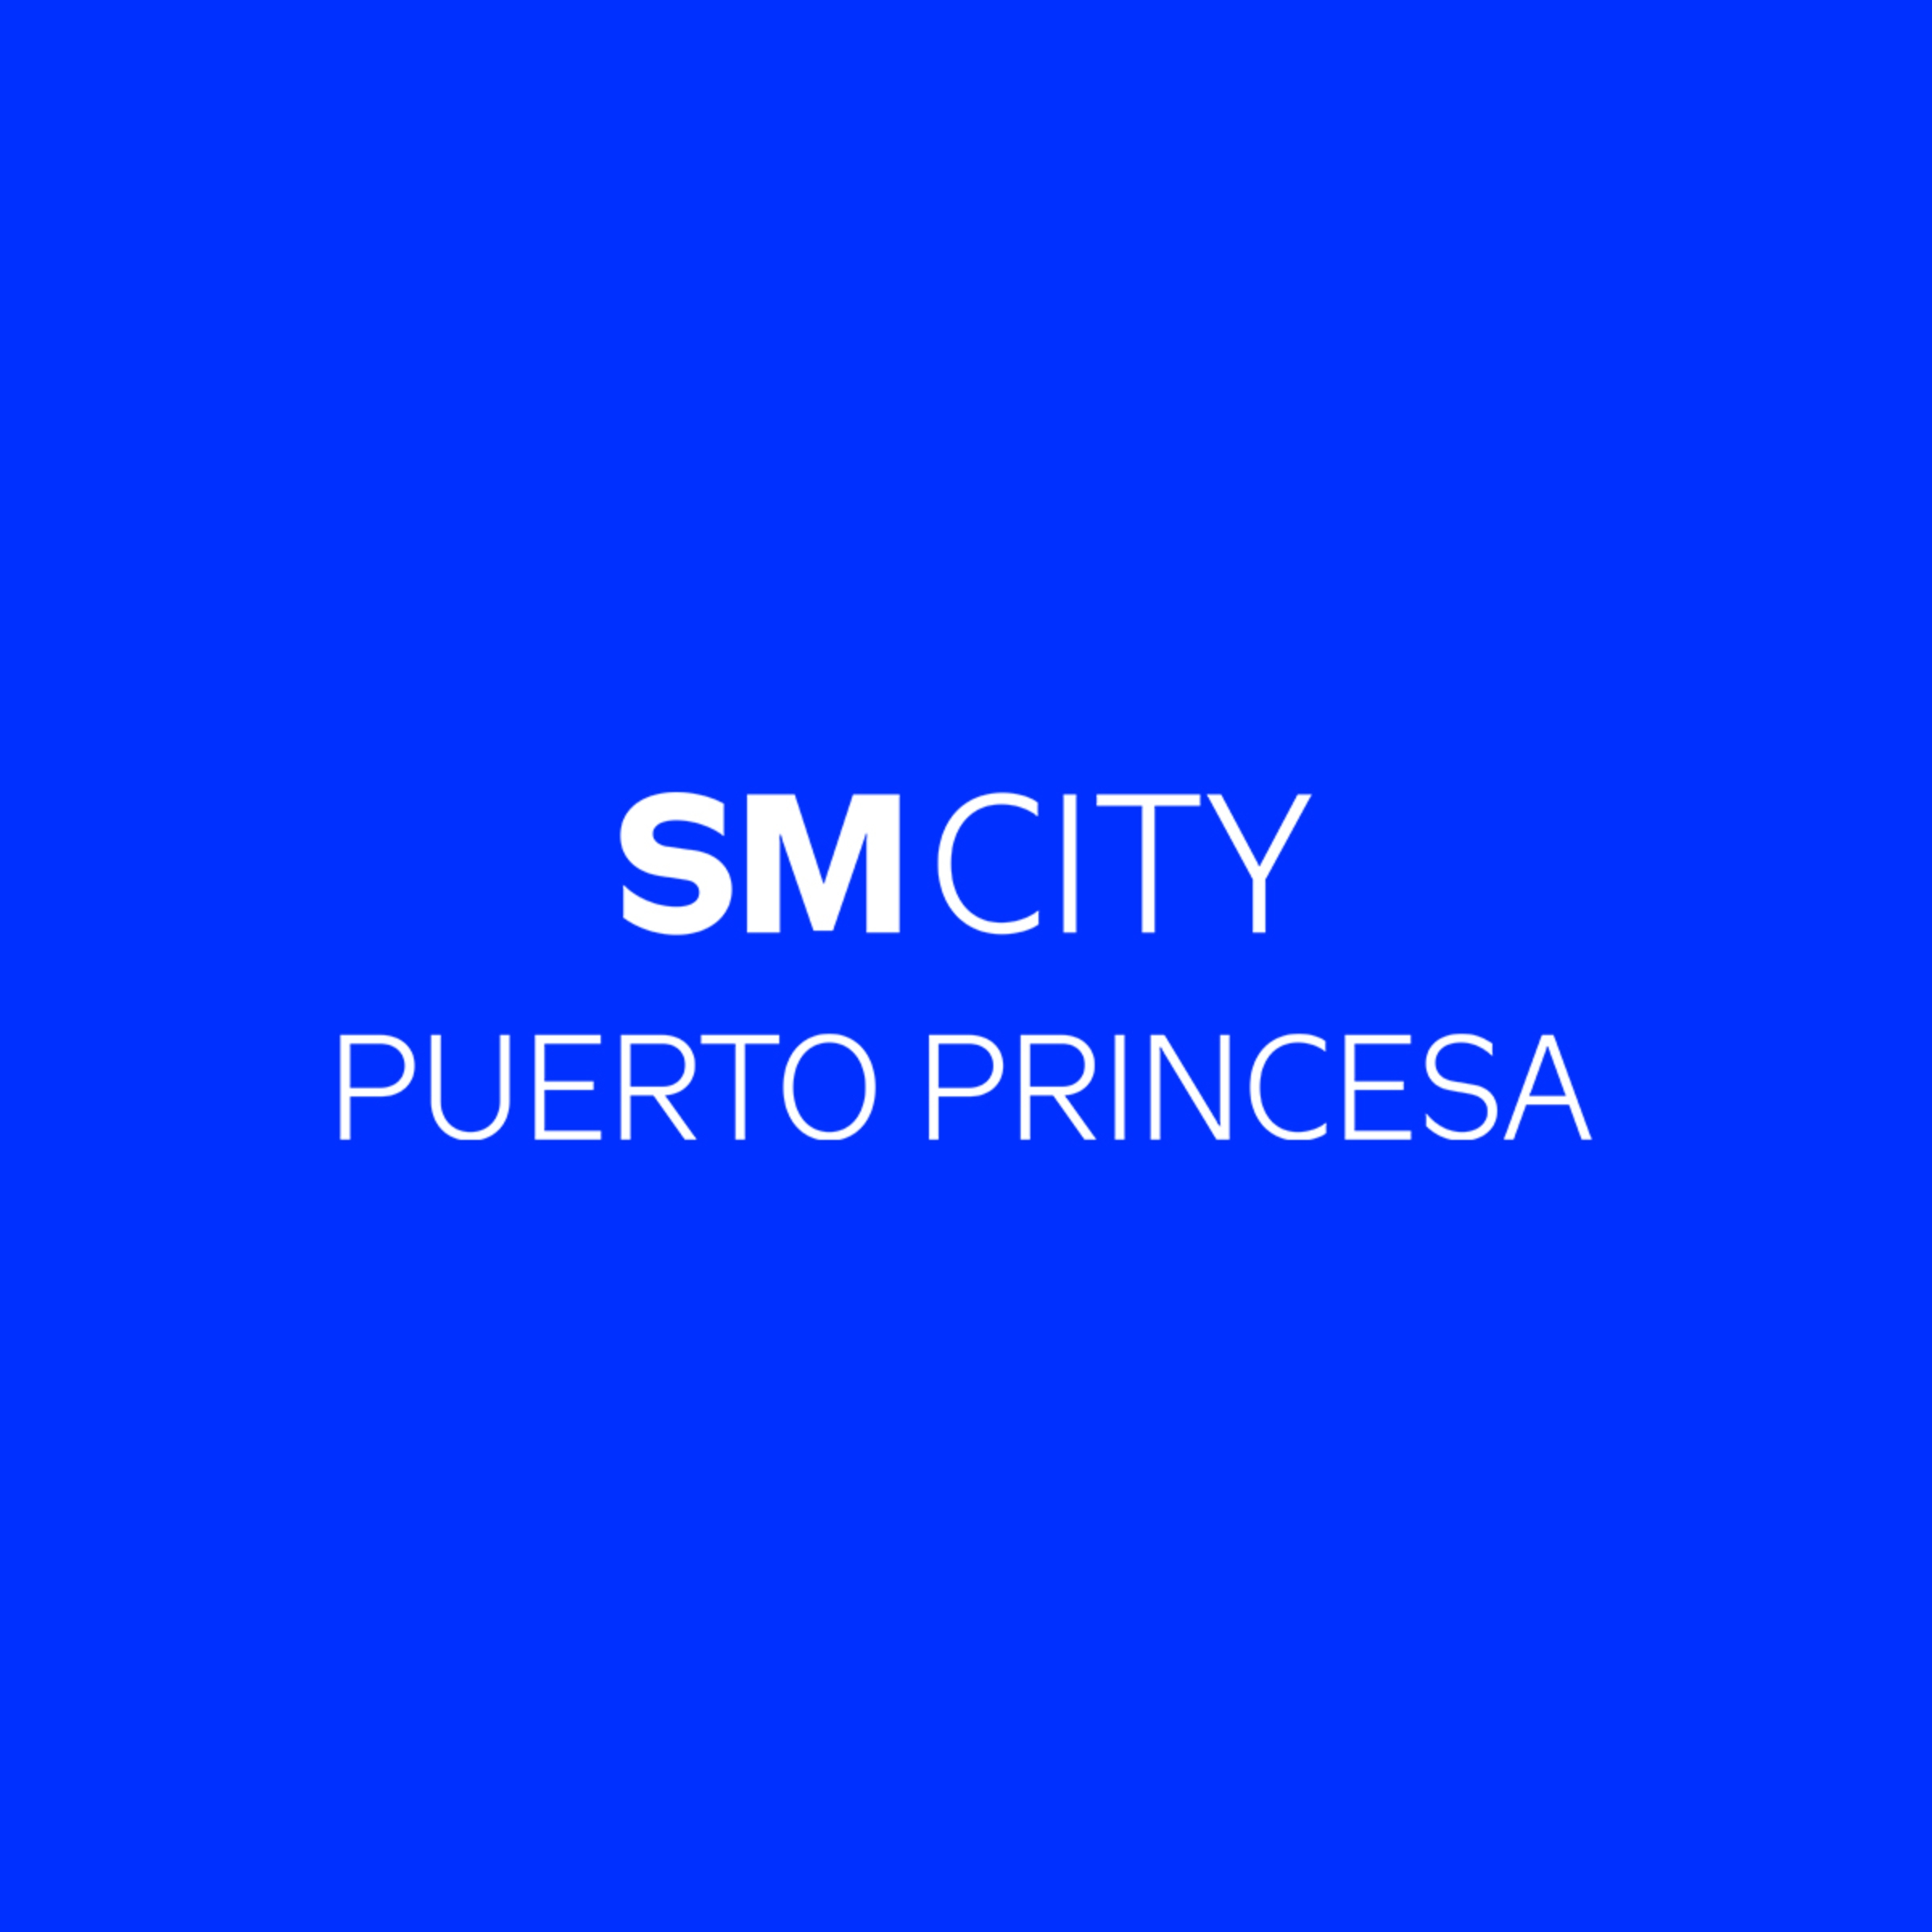 SM City Puerto Princesa